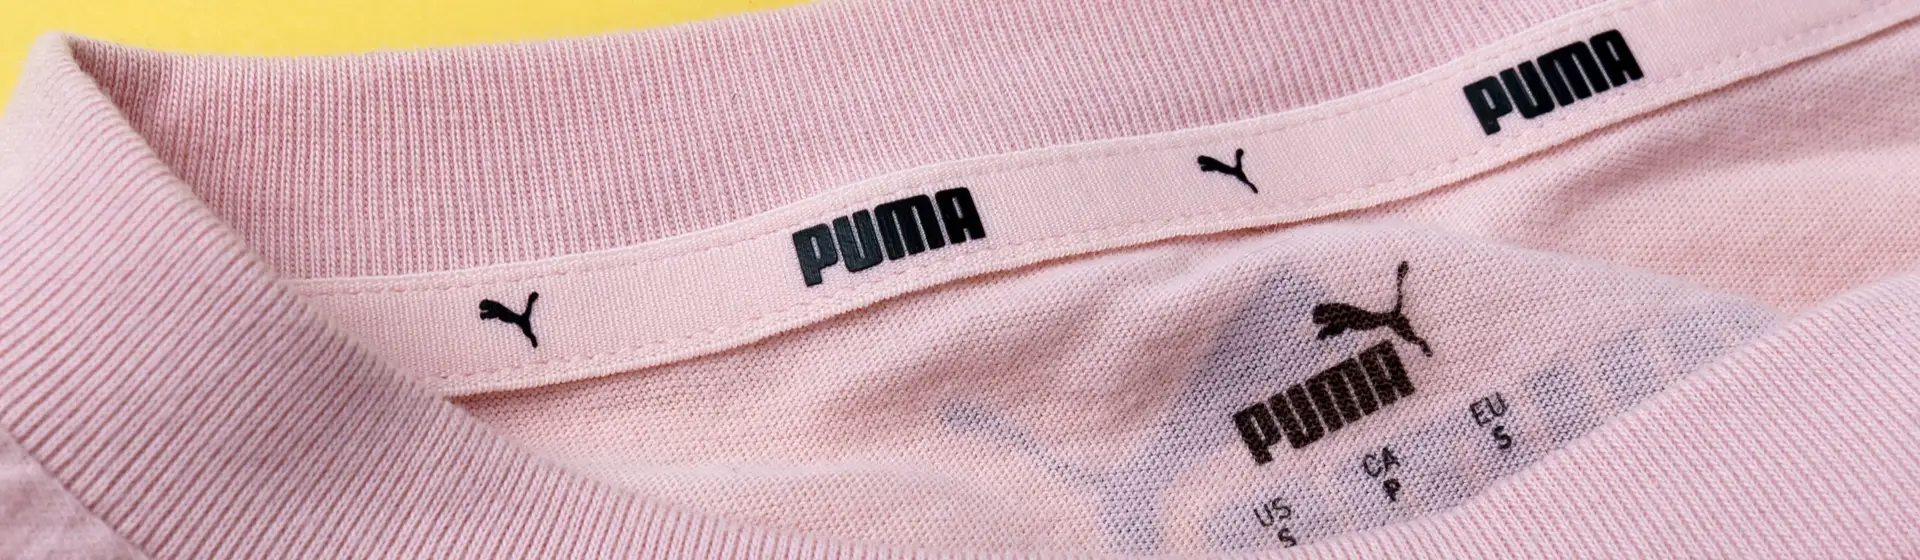 Camiseta Puma: veja 7 melhores modelos casuais e esportivos da marca